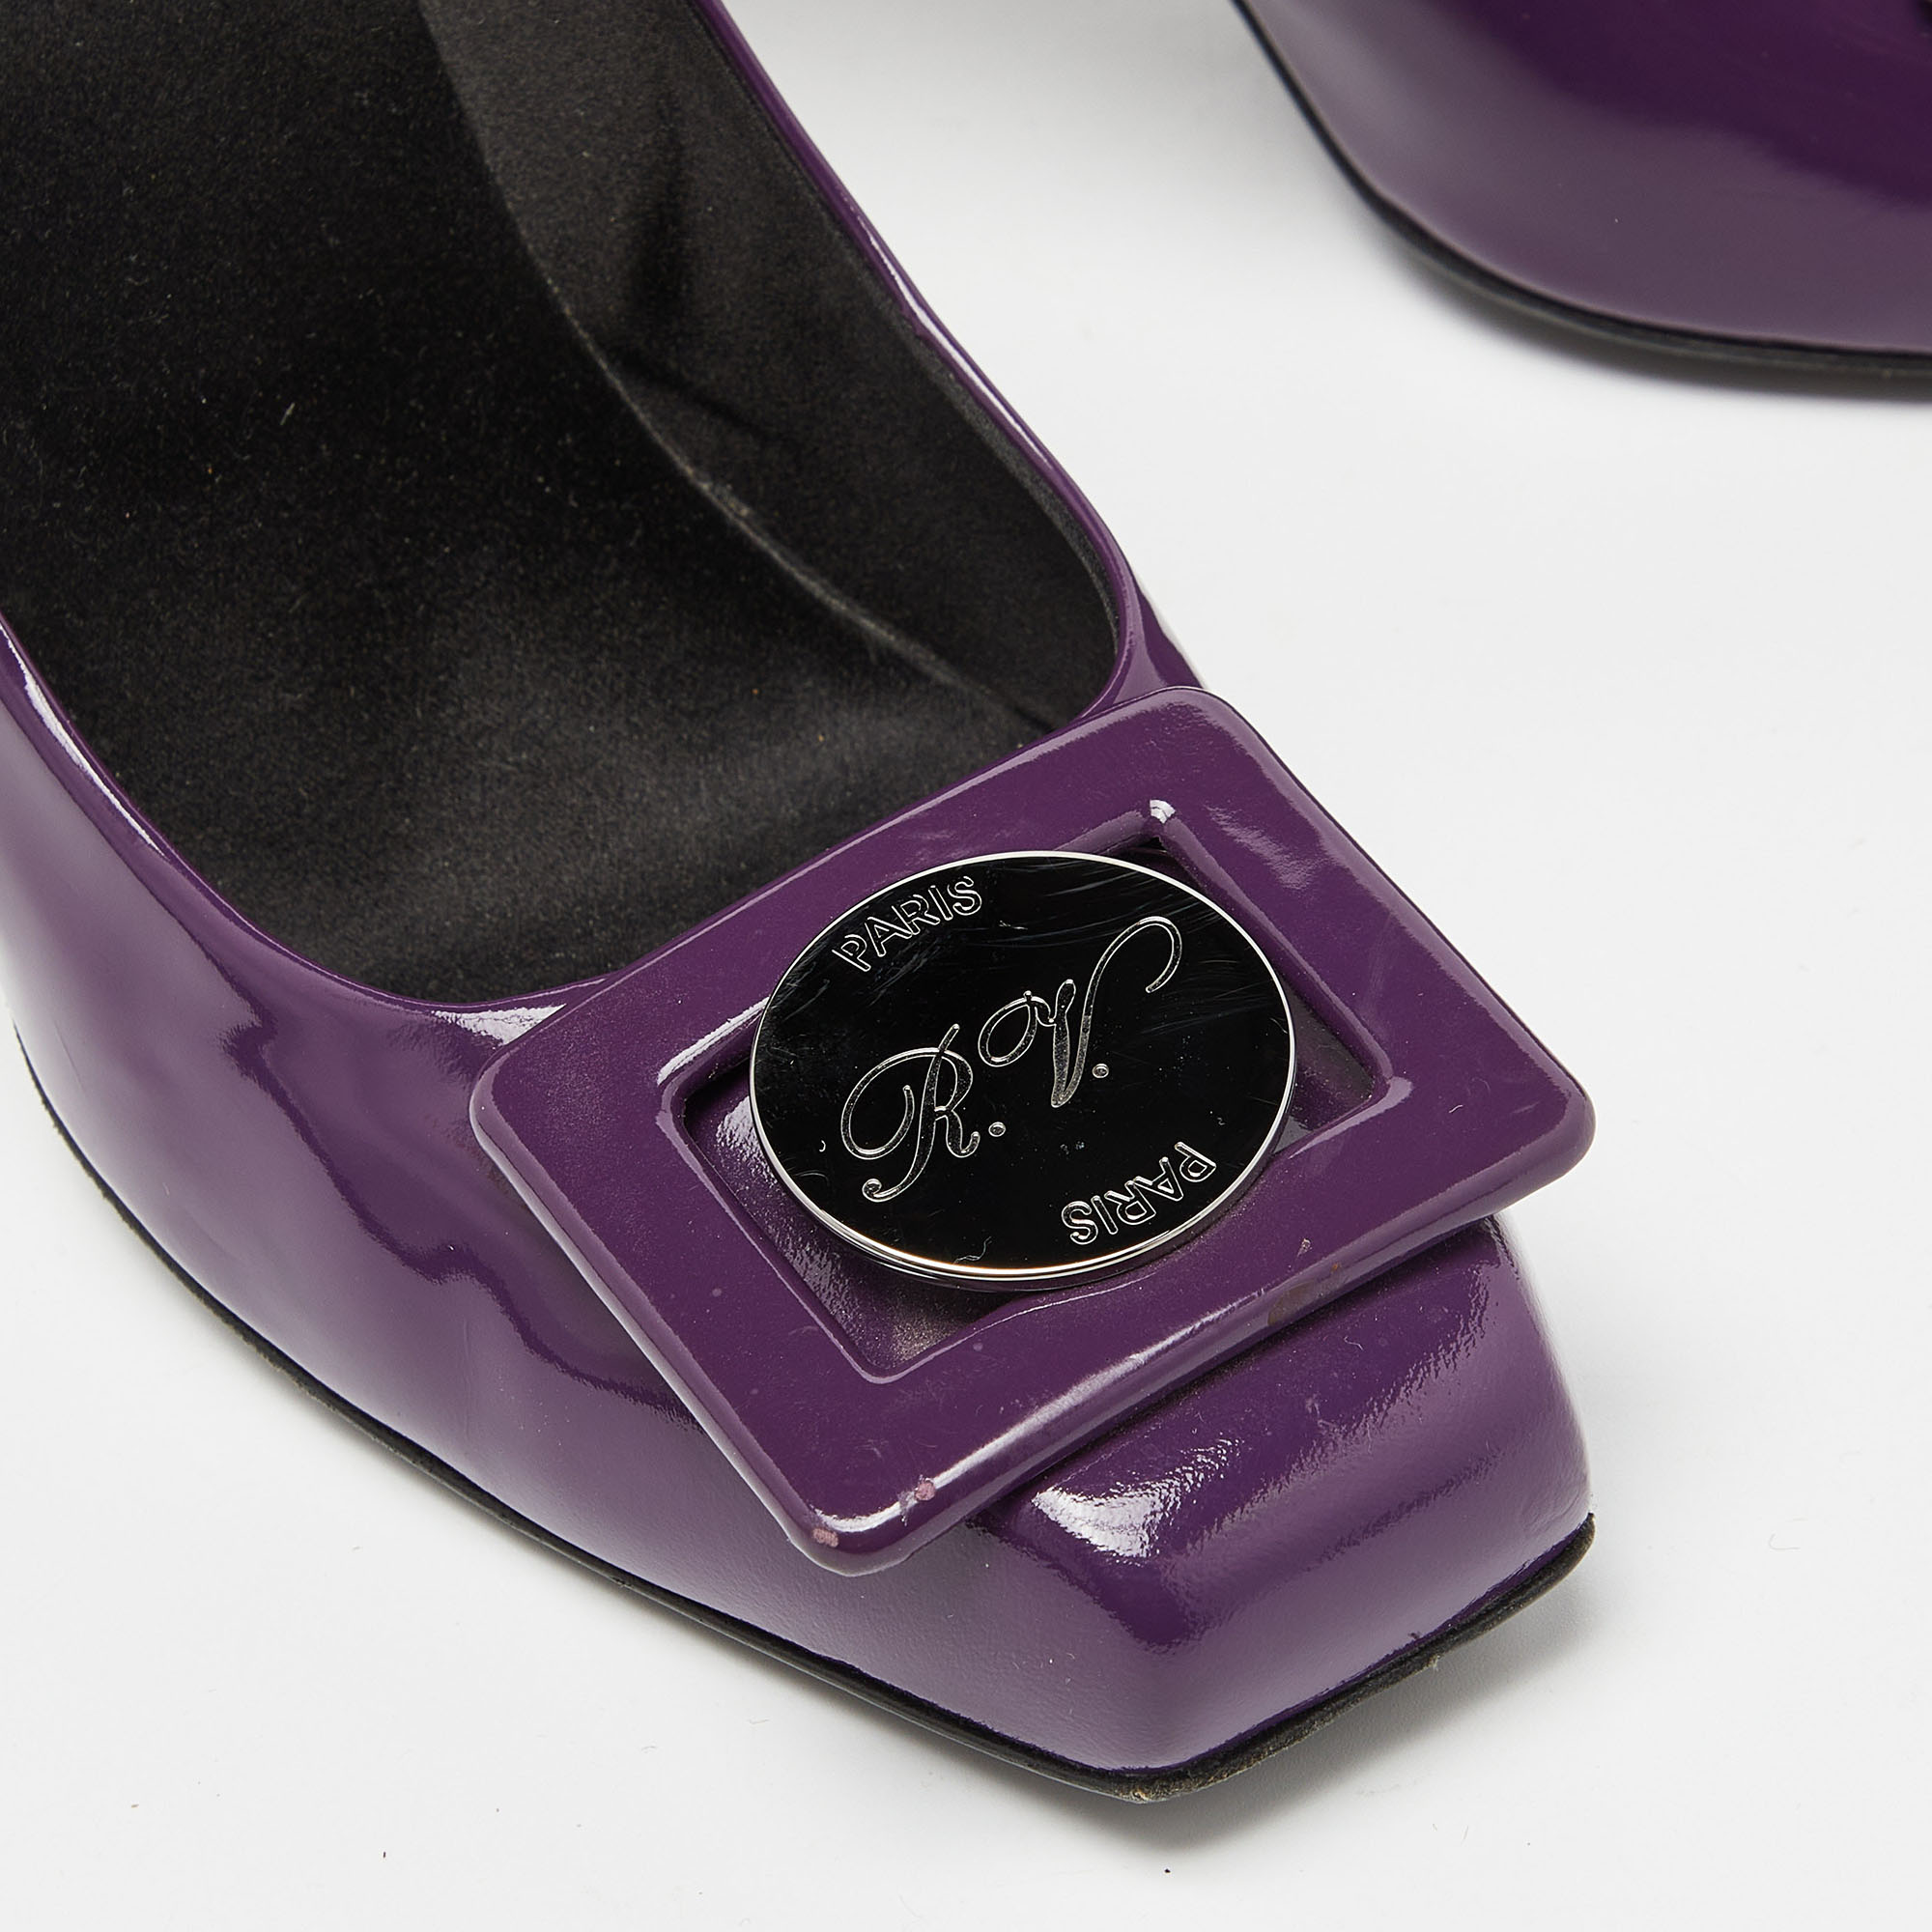 Roger Vivier Purple Patent Leather Pumps Size 38